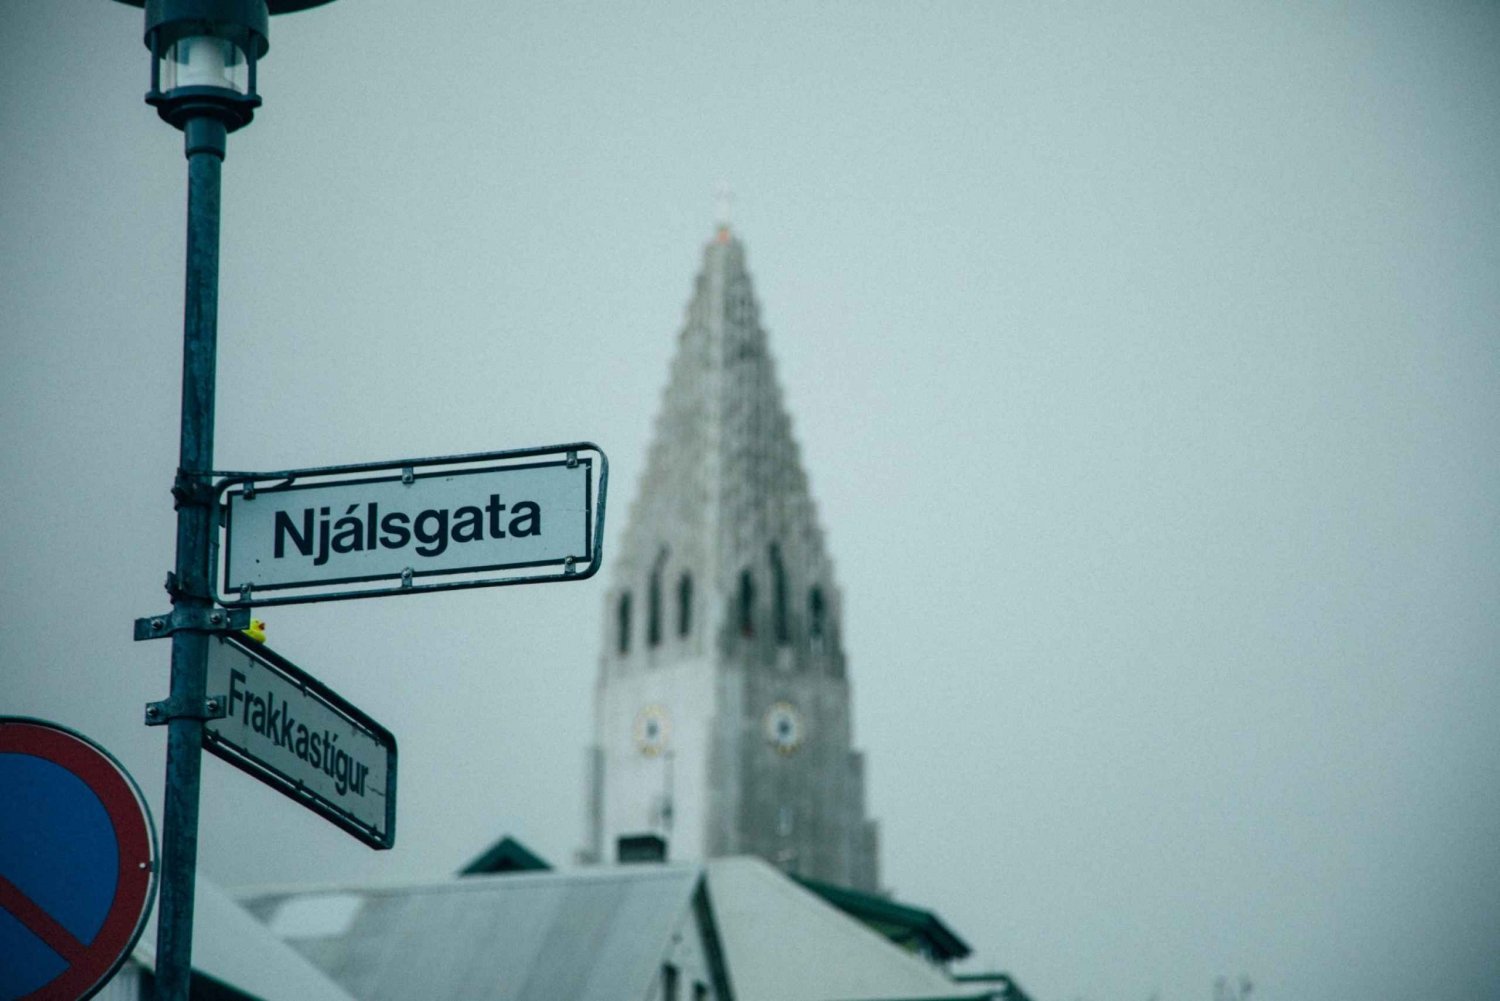 Reykjavík: City Exploration Game and Tour